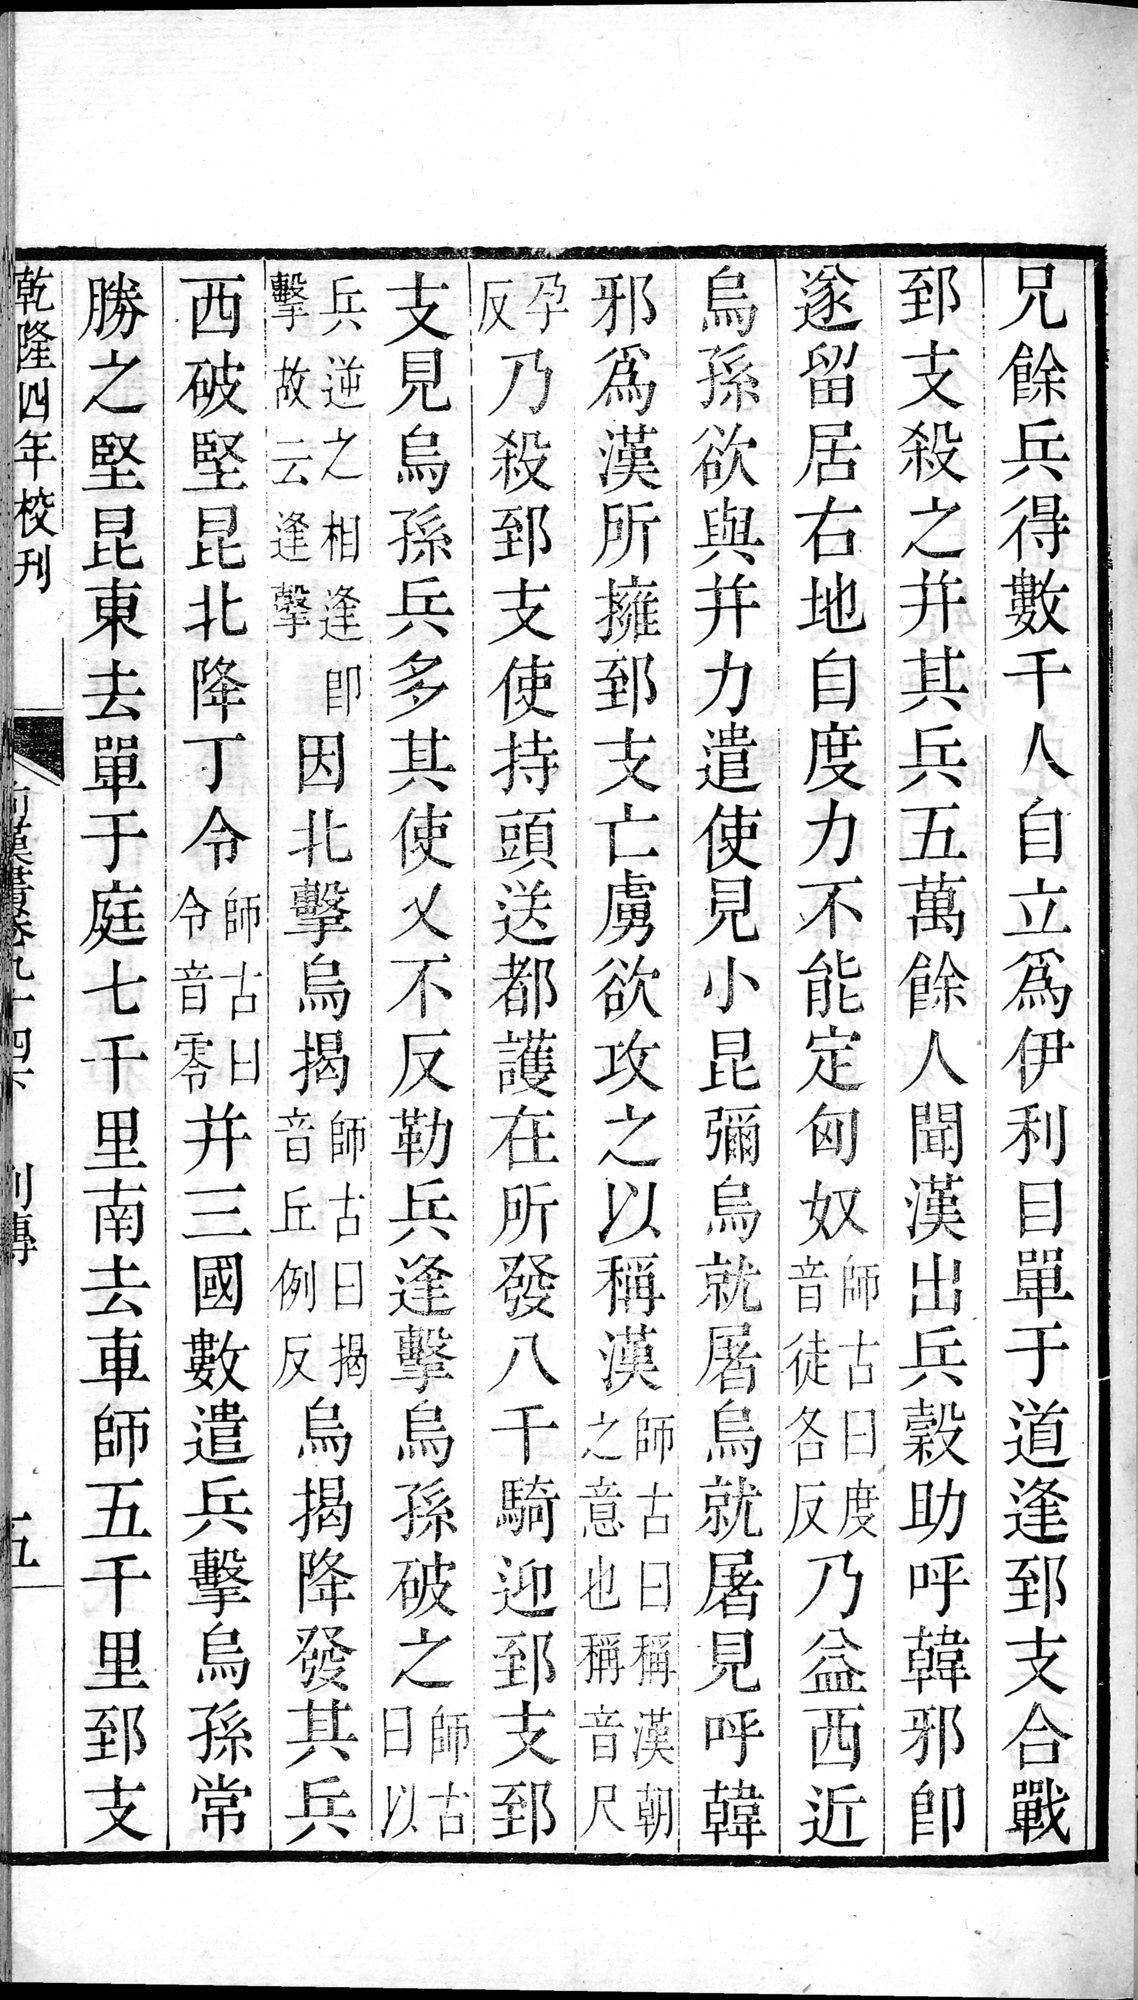 前漢書 : vol.94 bottom / Page 9 (Grayscale High Resolution Image)